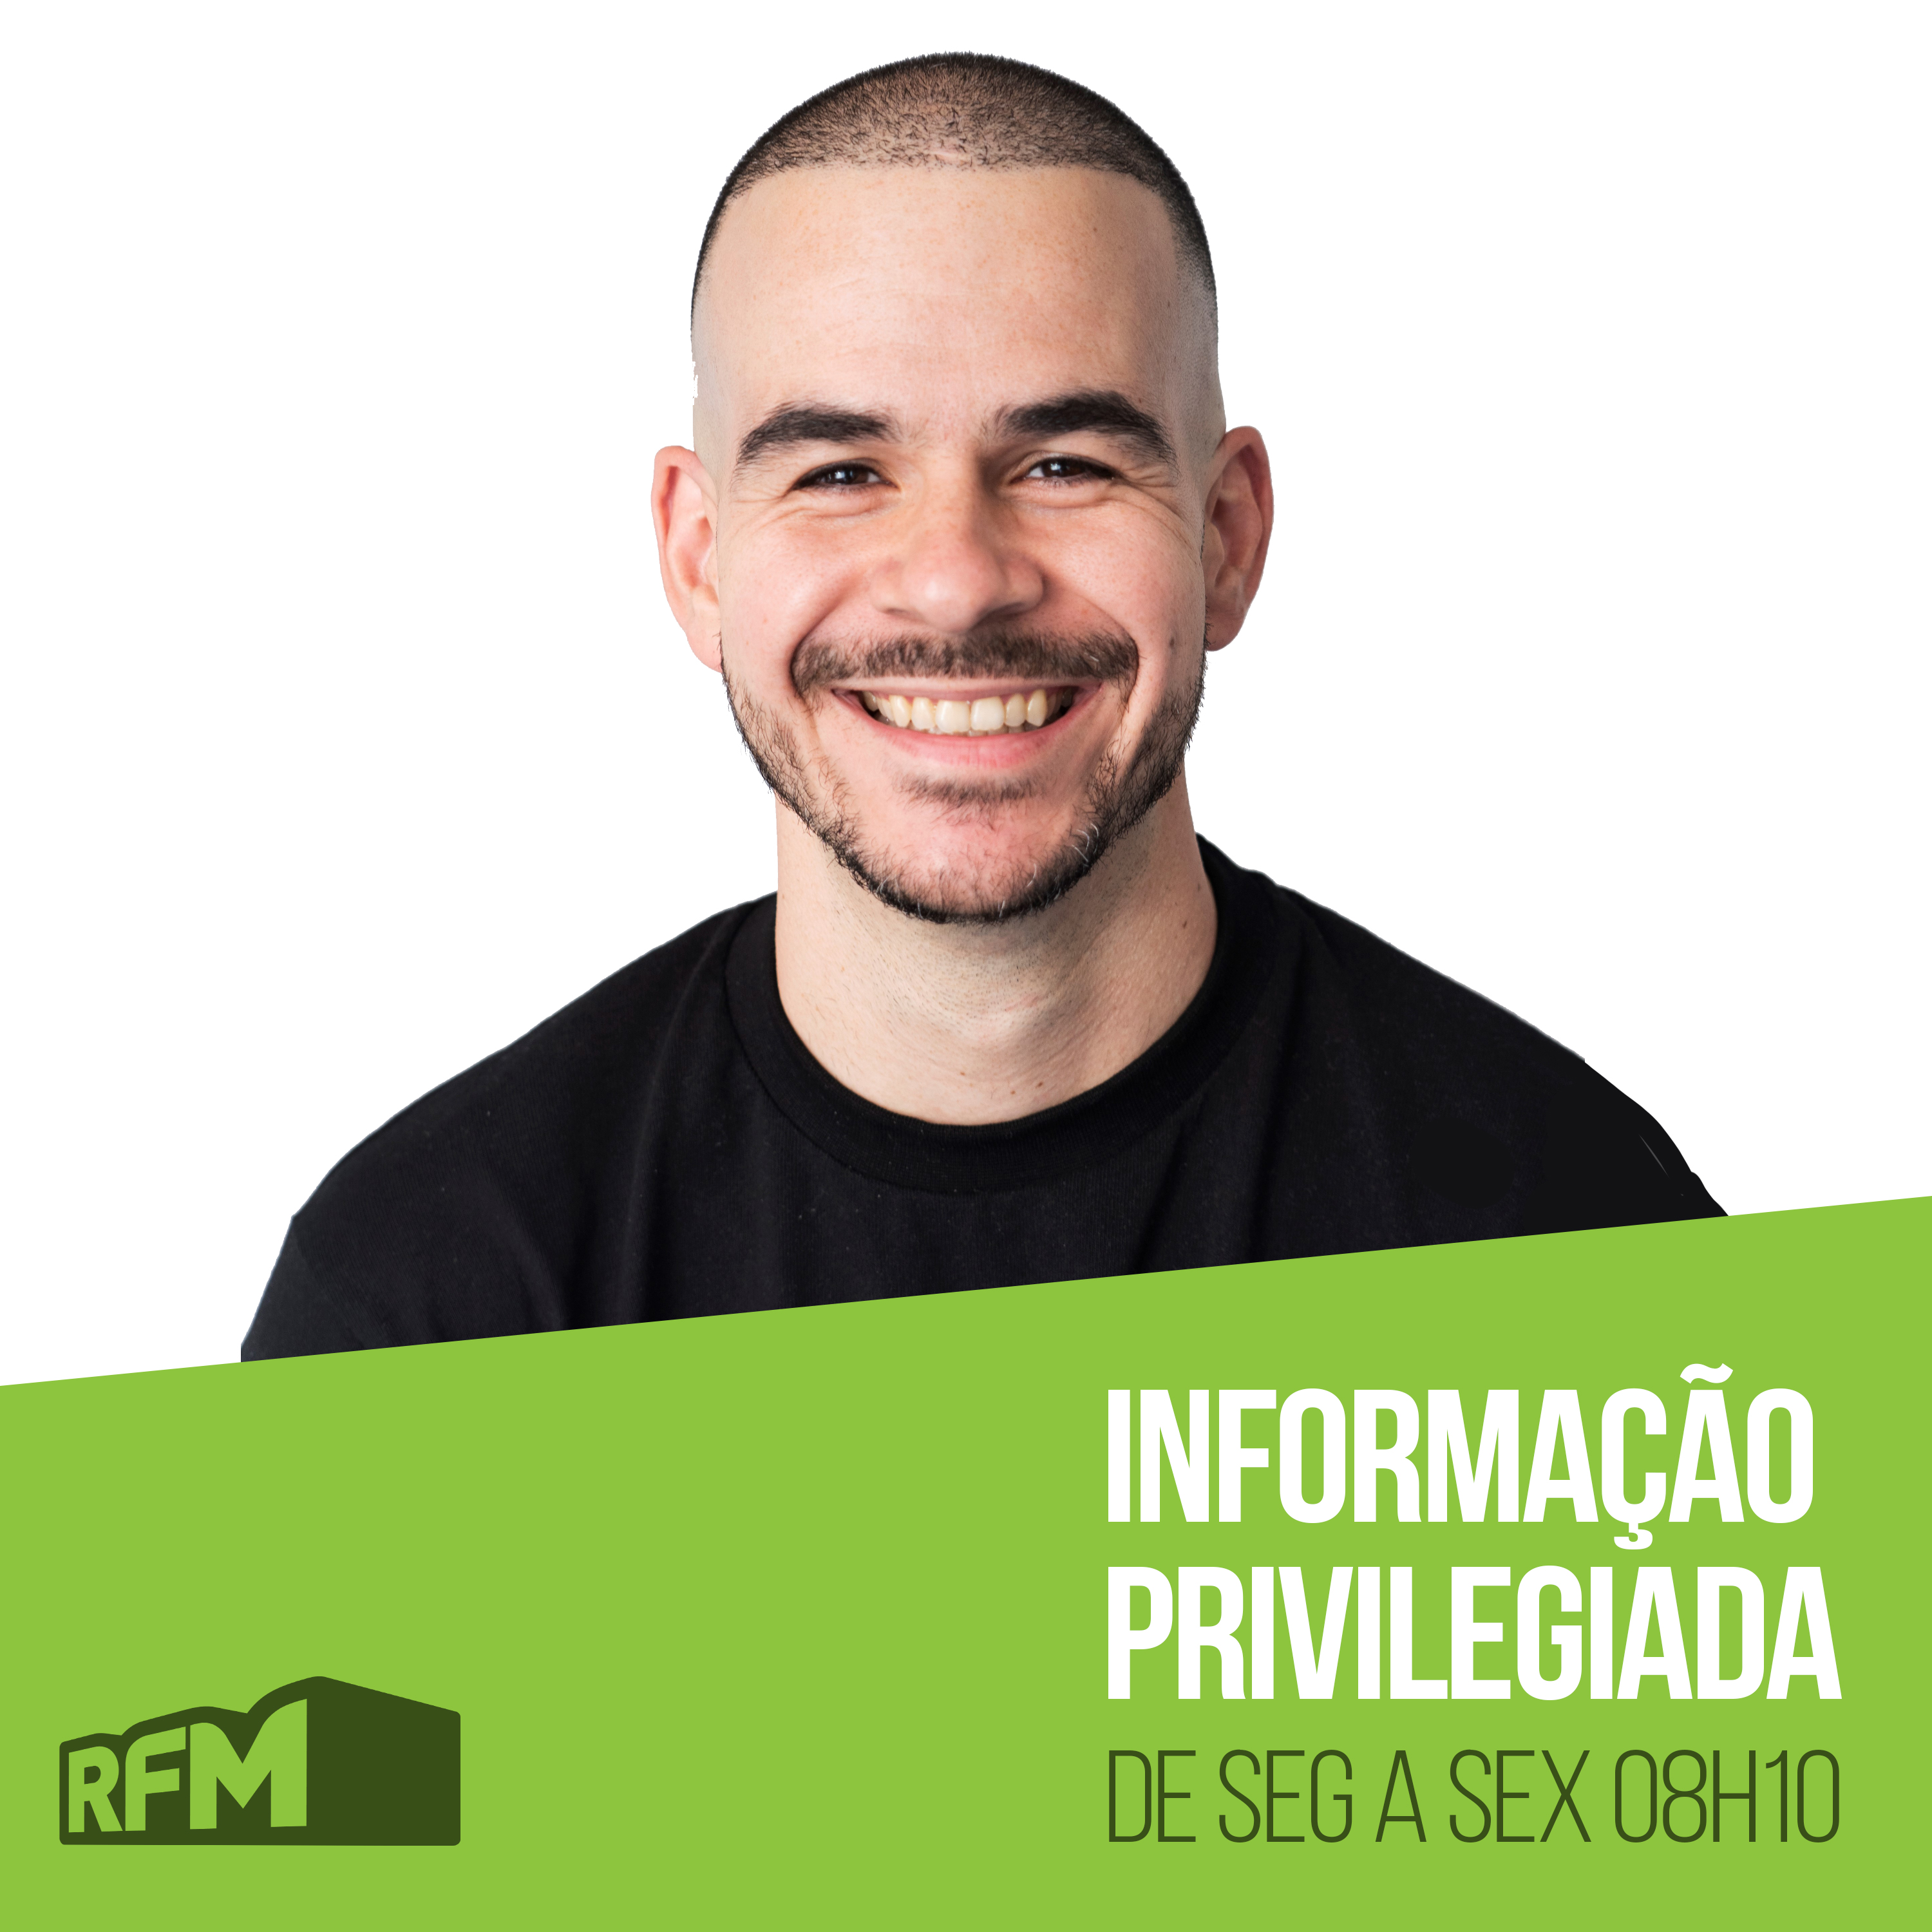 RFM - Informação Privilegiada: BÁRBARA, A DEPRESSÃO